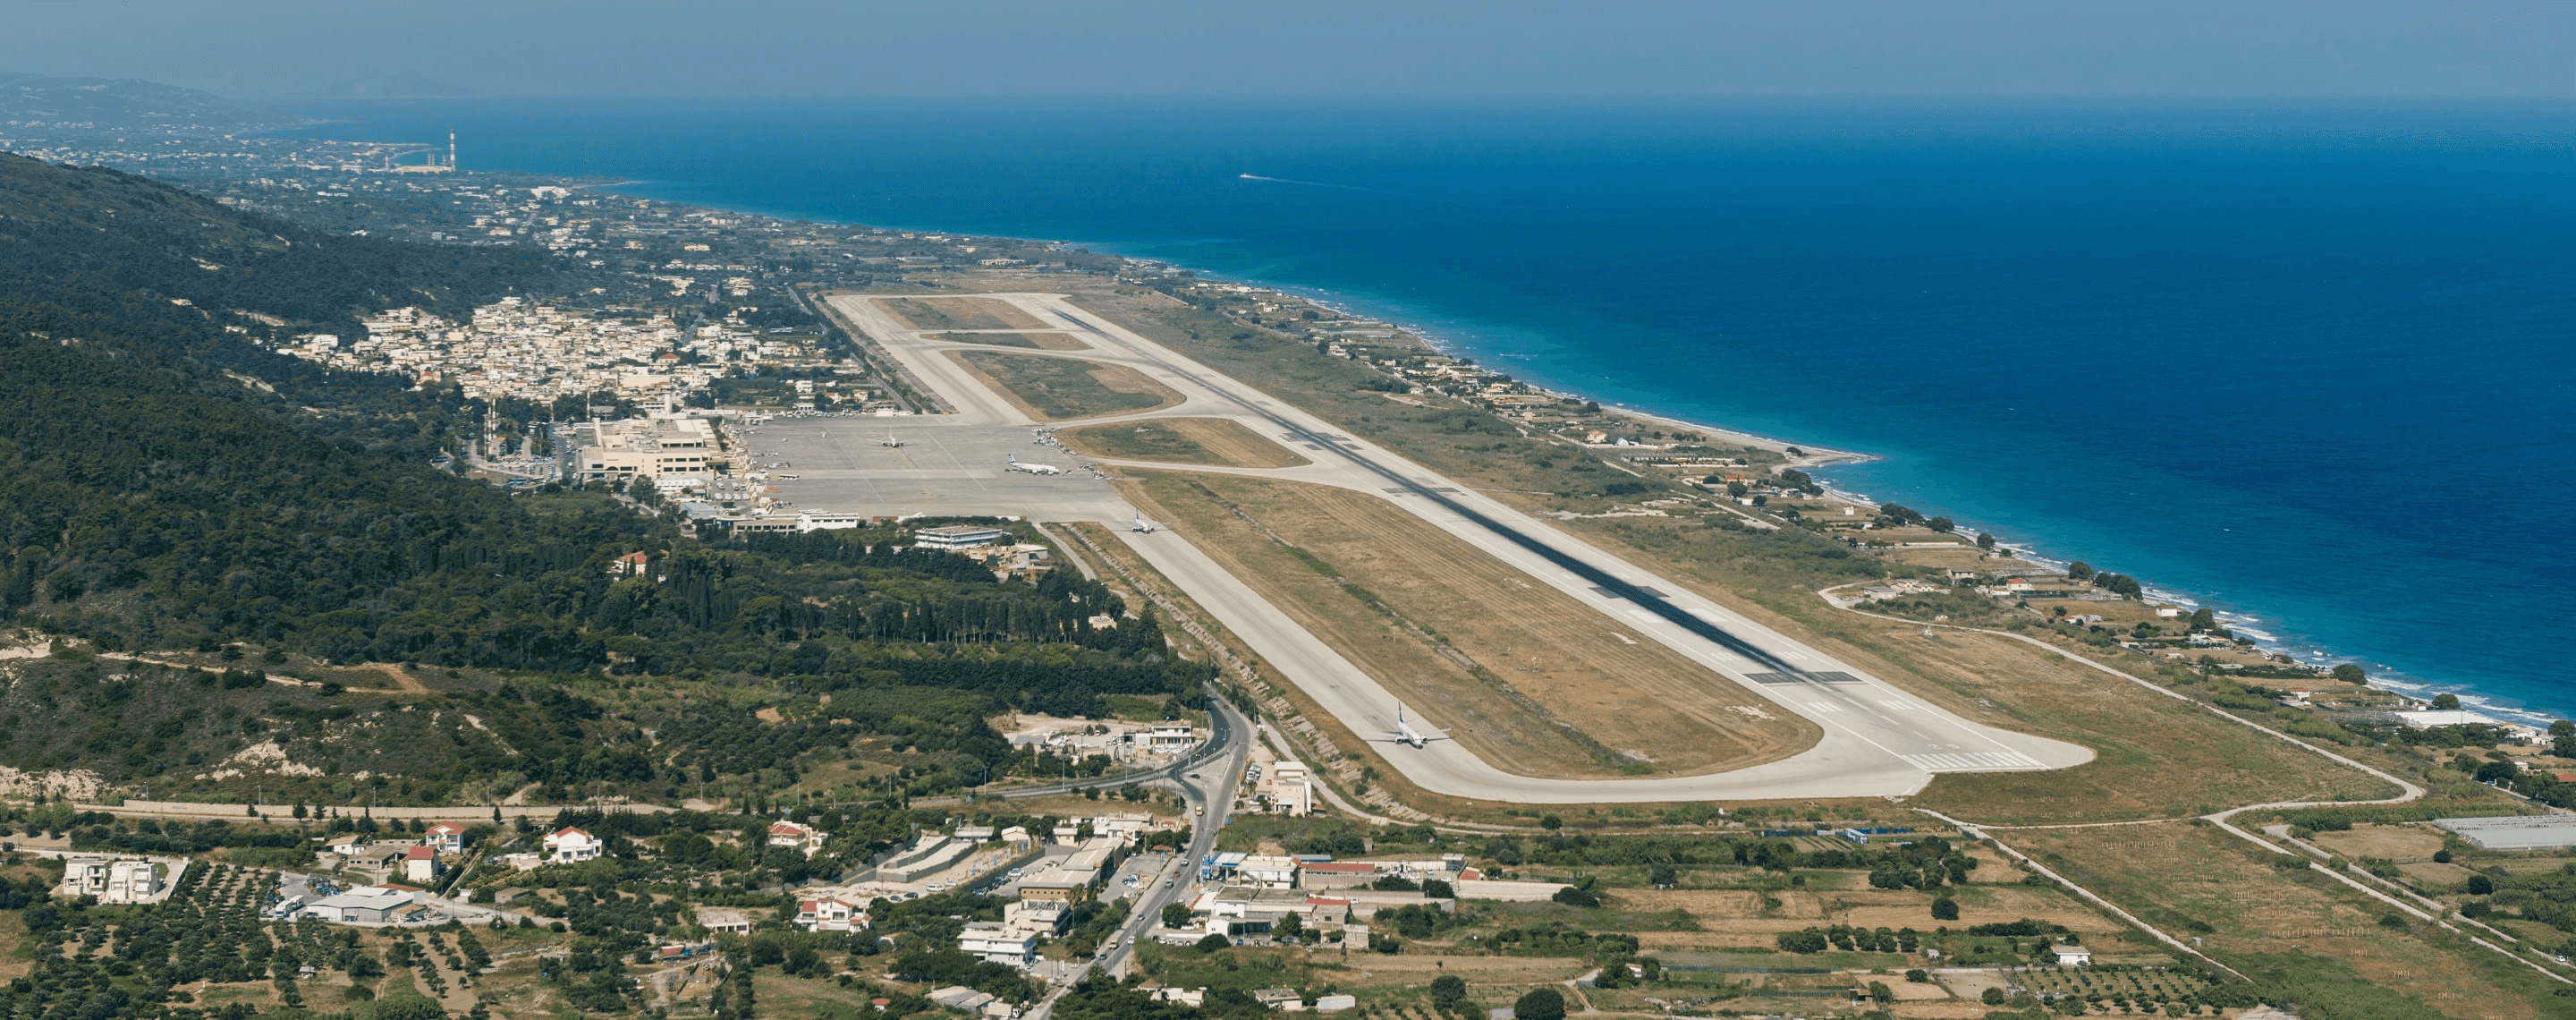 Luftaufnahme vom Flughafen Rhodos, Griechenland